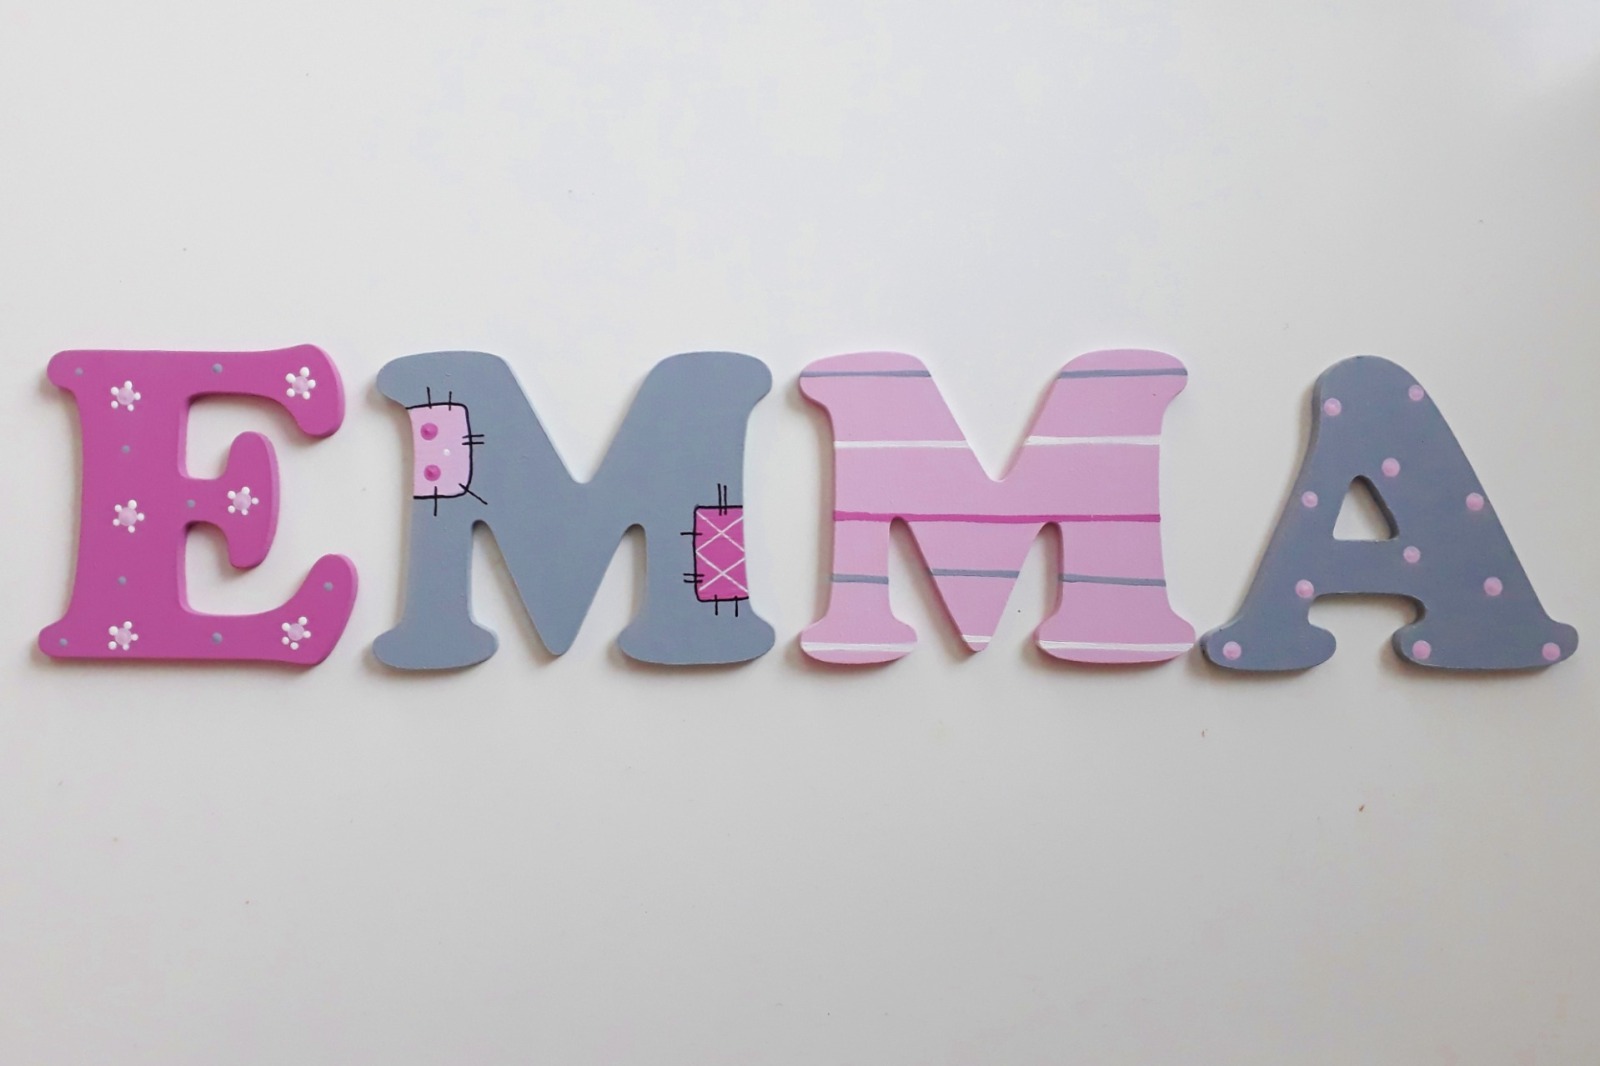 8cm Holzbuchstaben Kinderzimmer personalisiert in rosa grau und pink